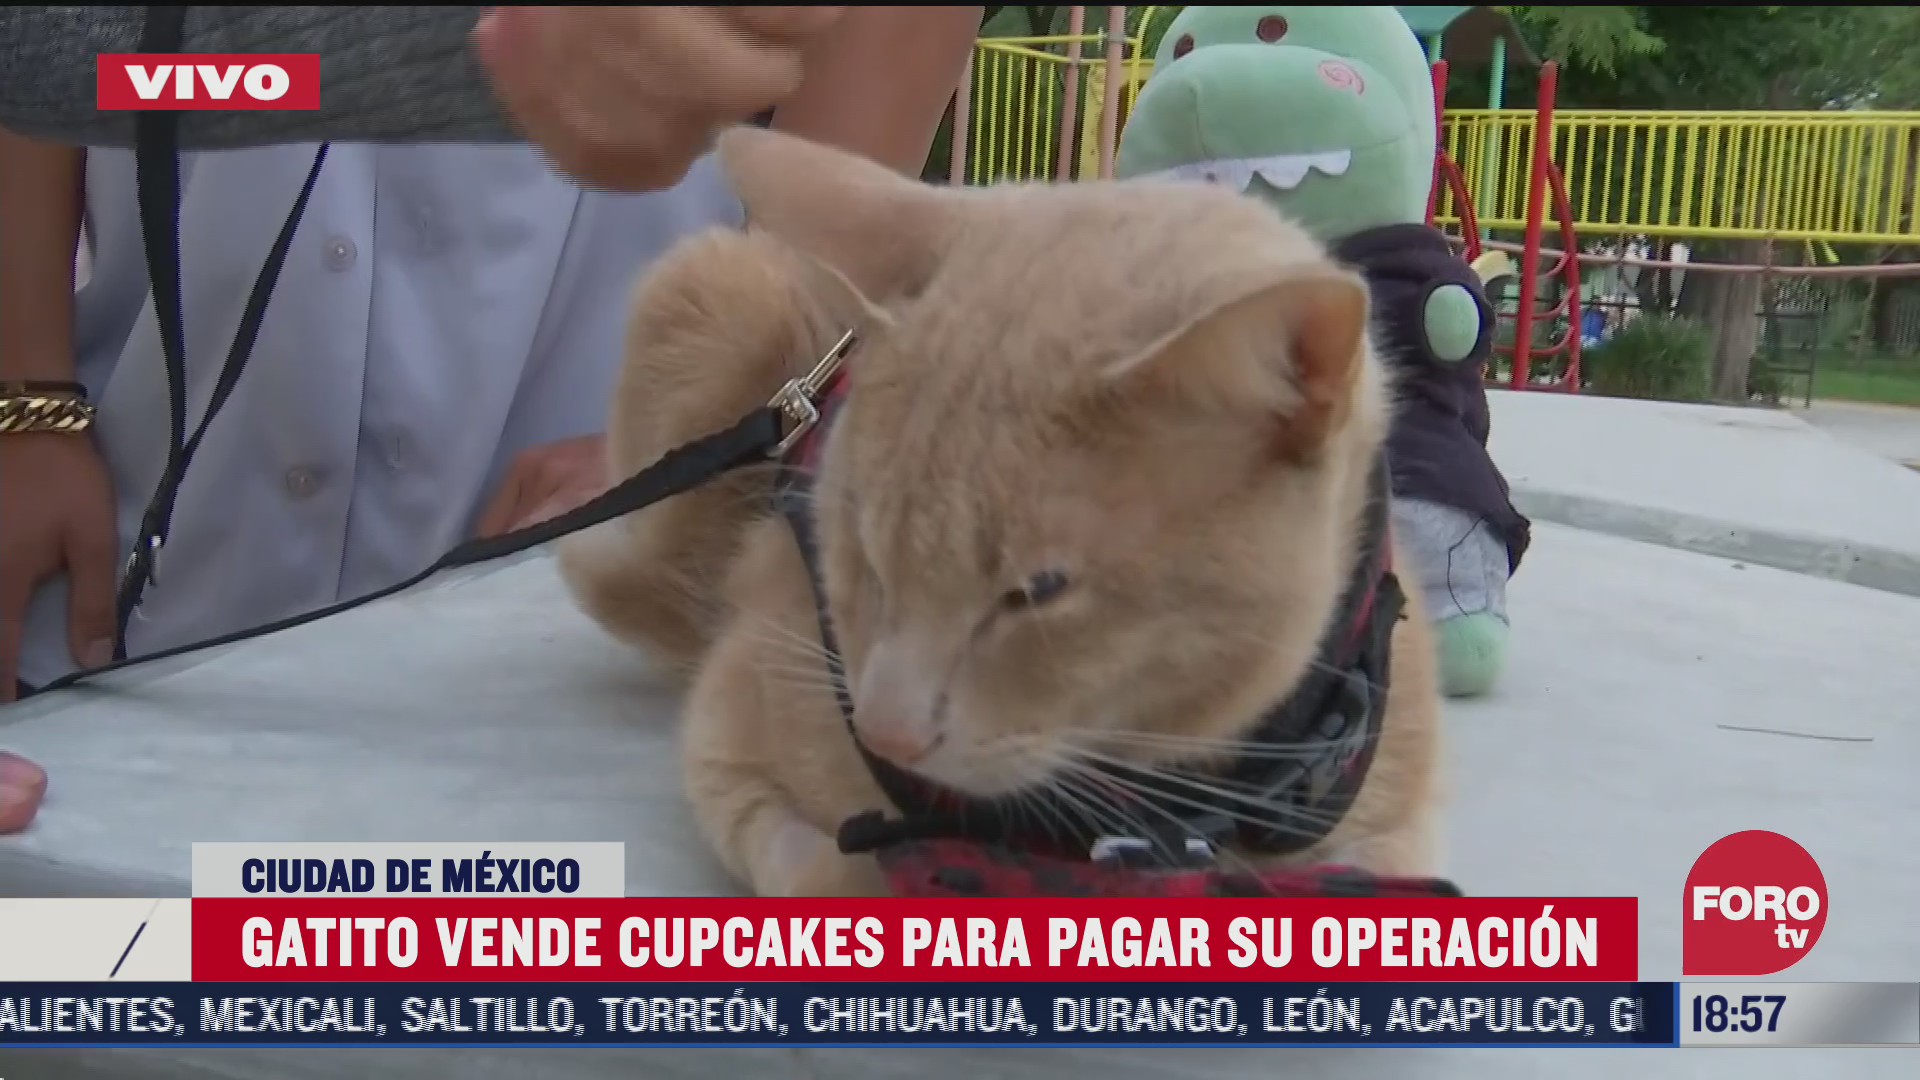 antonio el gatito que vende cupcakes para pagar su operacion